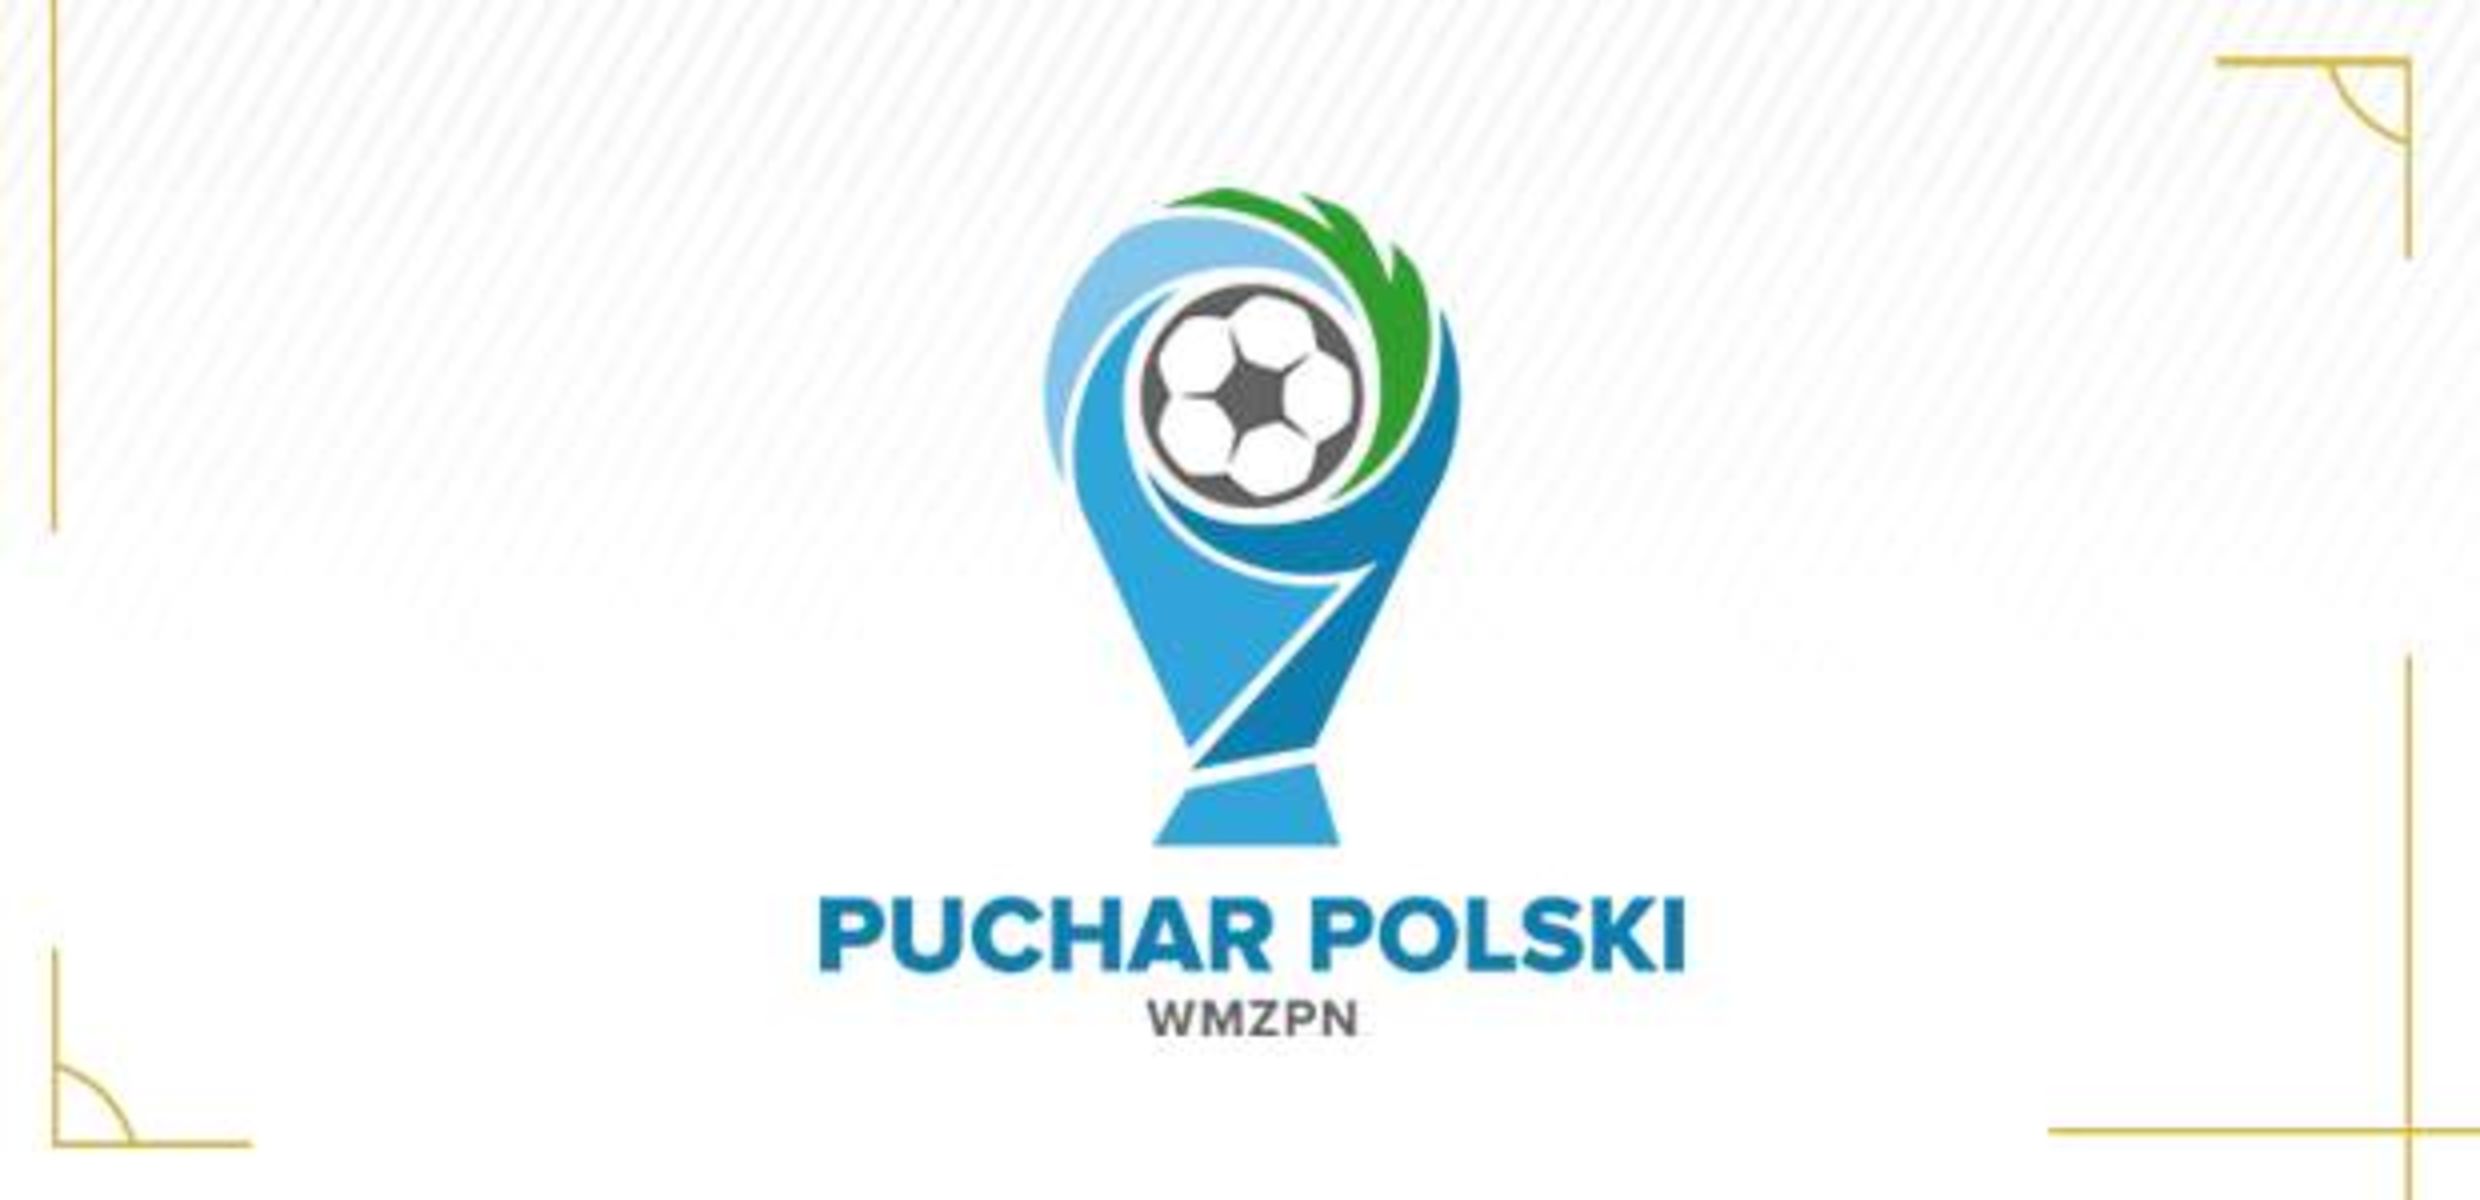 Runda przedwstępna Wojewódzkiego Pucharu Polski. Fot. wmpzn.pl